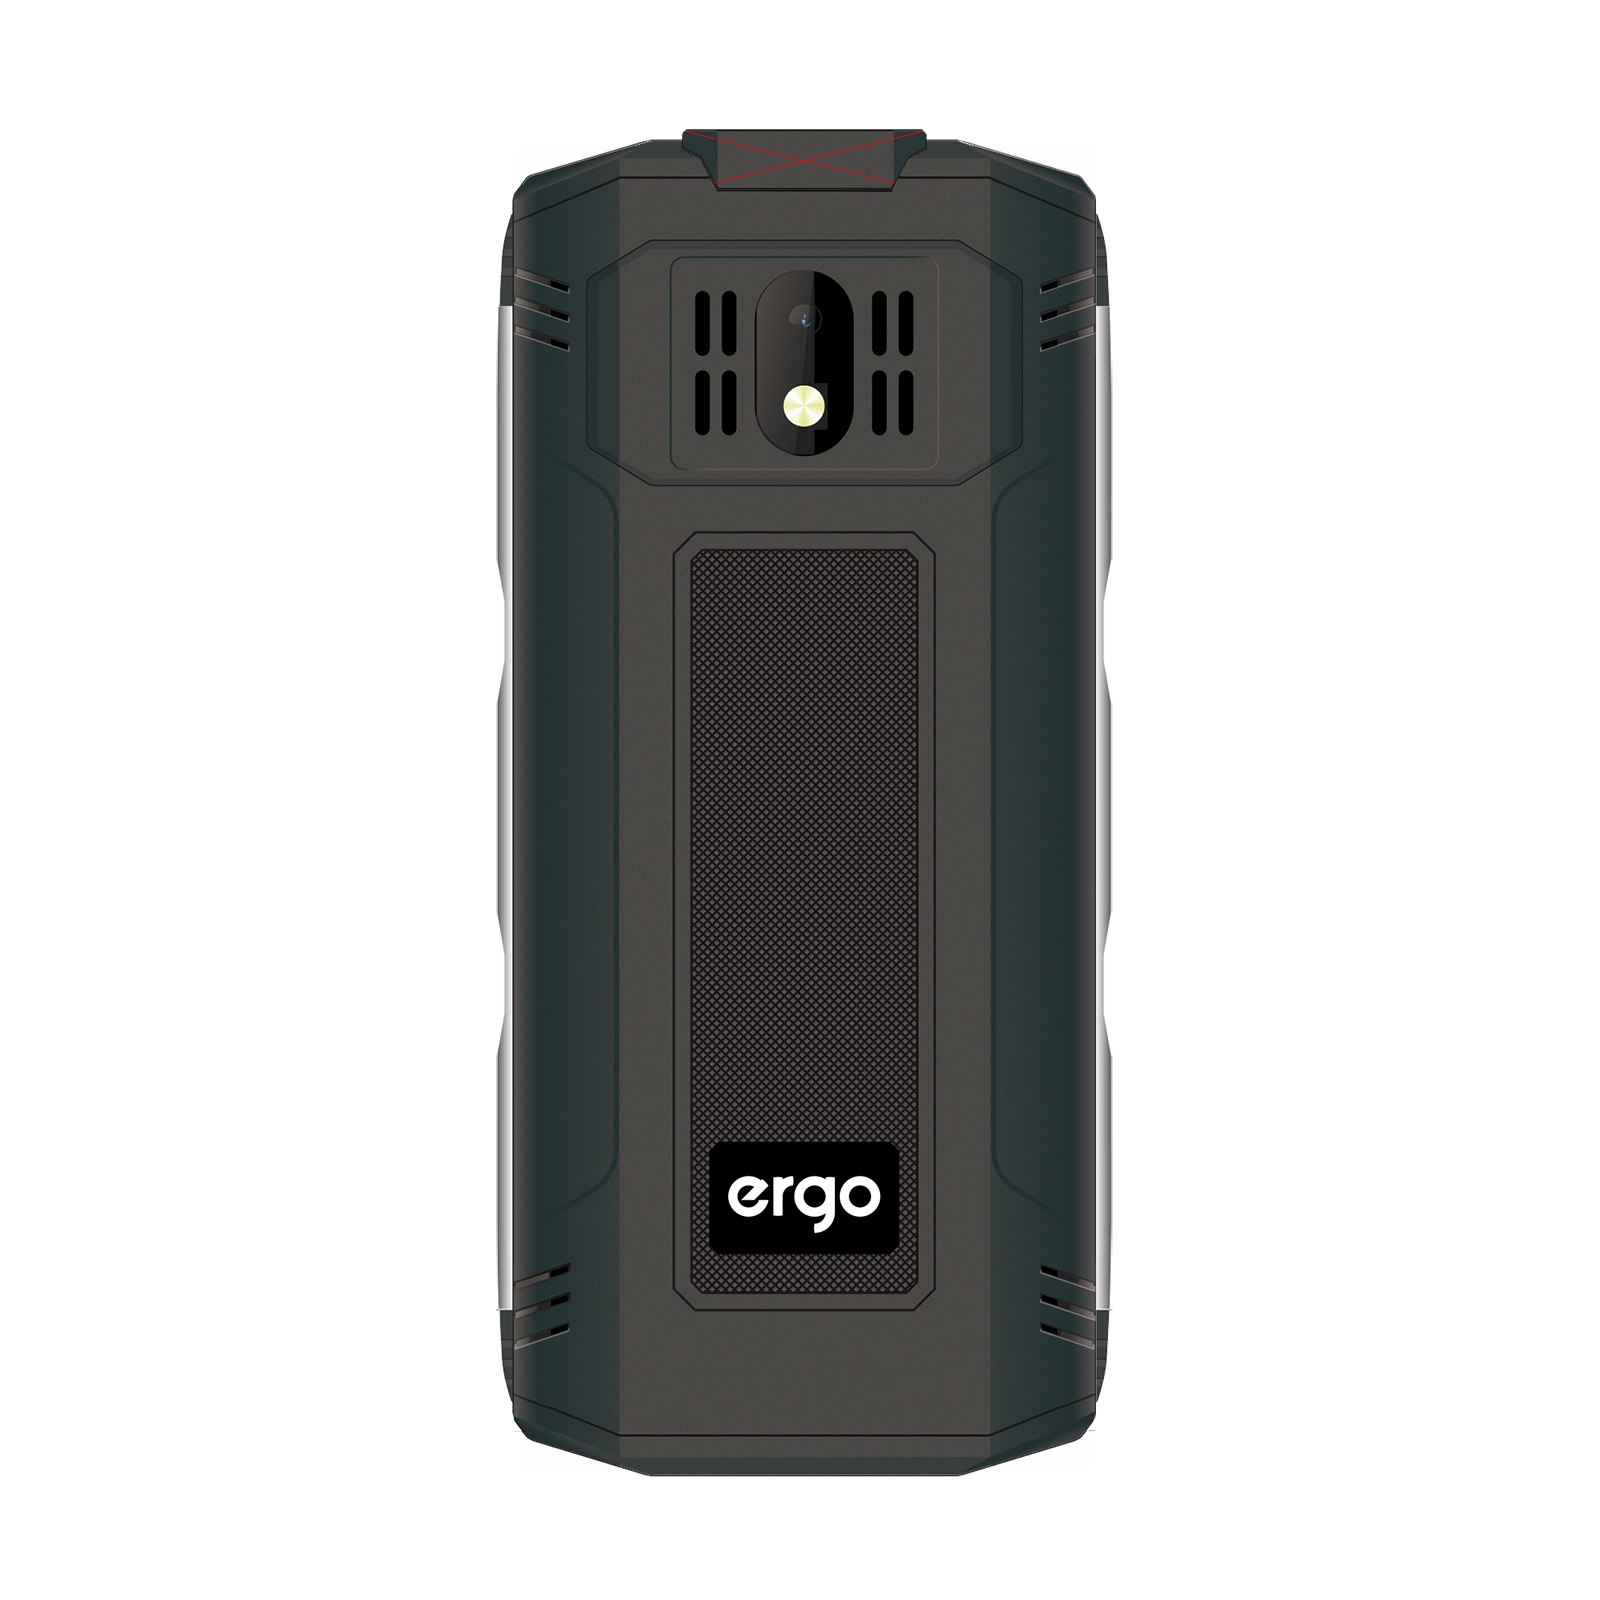 Мобильный телефон Ergo E282 Black изображение 3